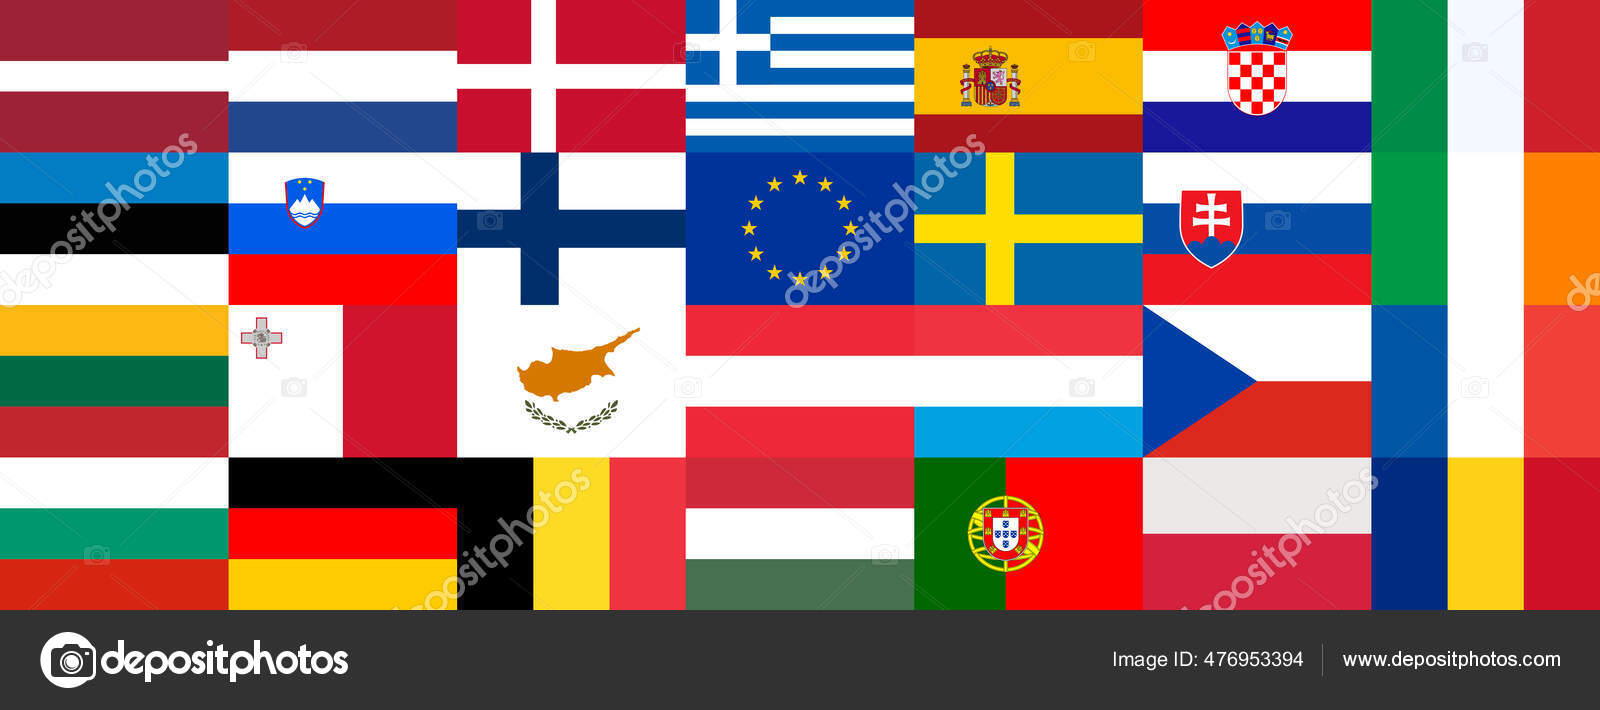 欧州連合加盟国の国旗とEuの国旗がまとめられている 大きな美しいカラフルなデザインのレイアウト ベクターイラスト Stock Vector by  ©ivn3da 476953394